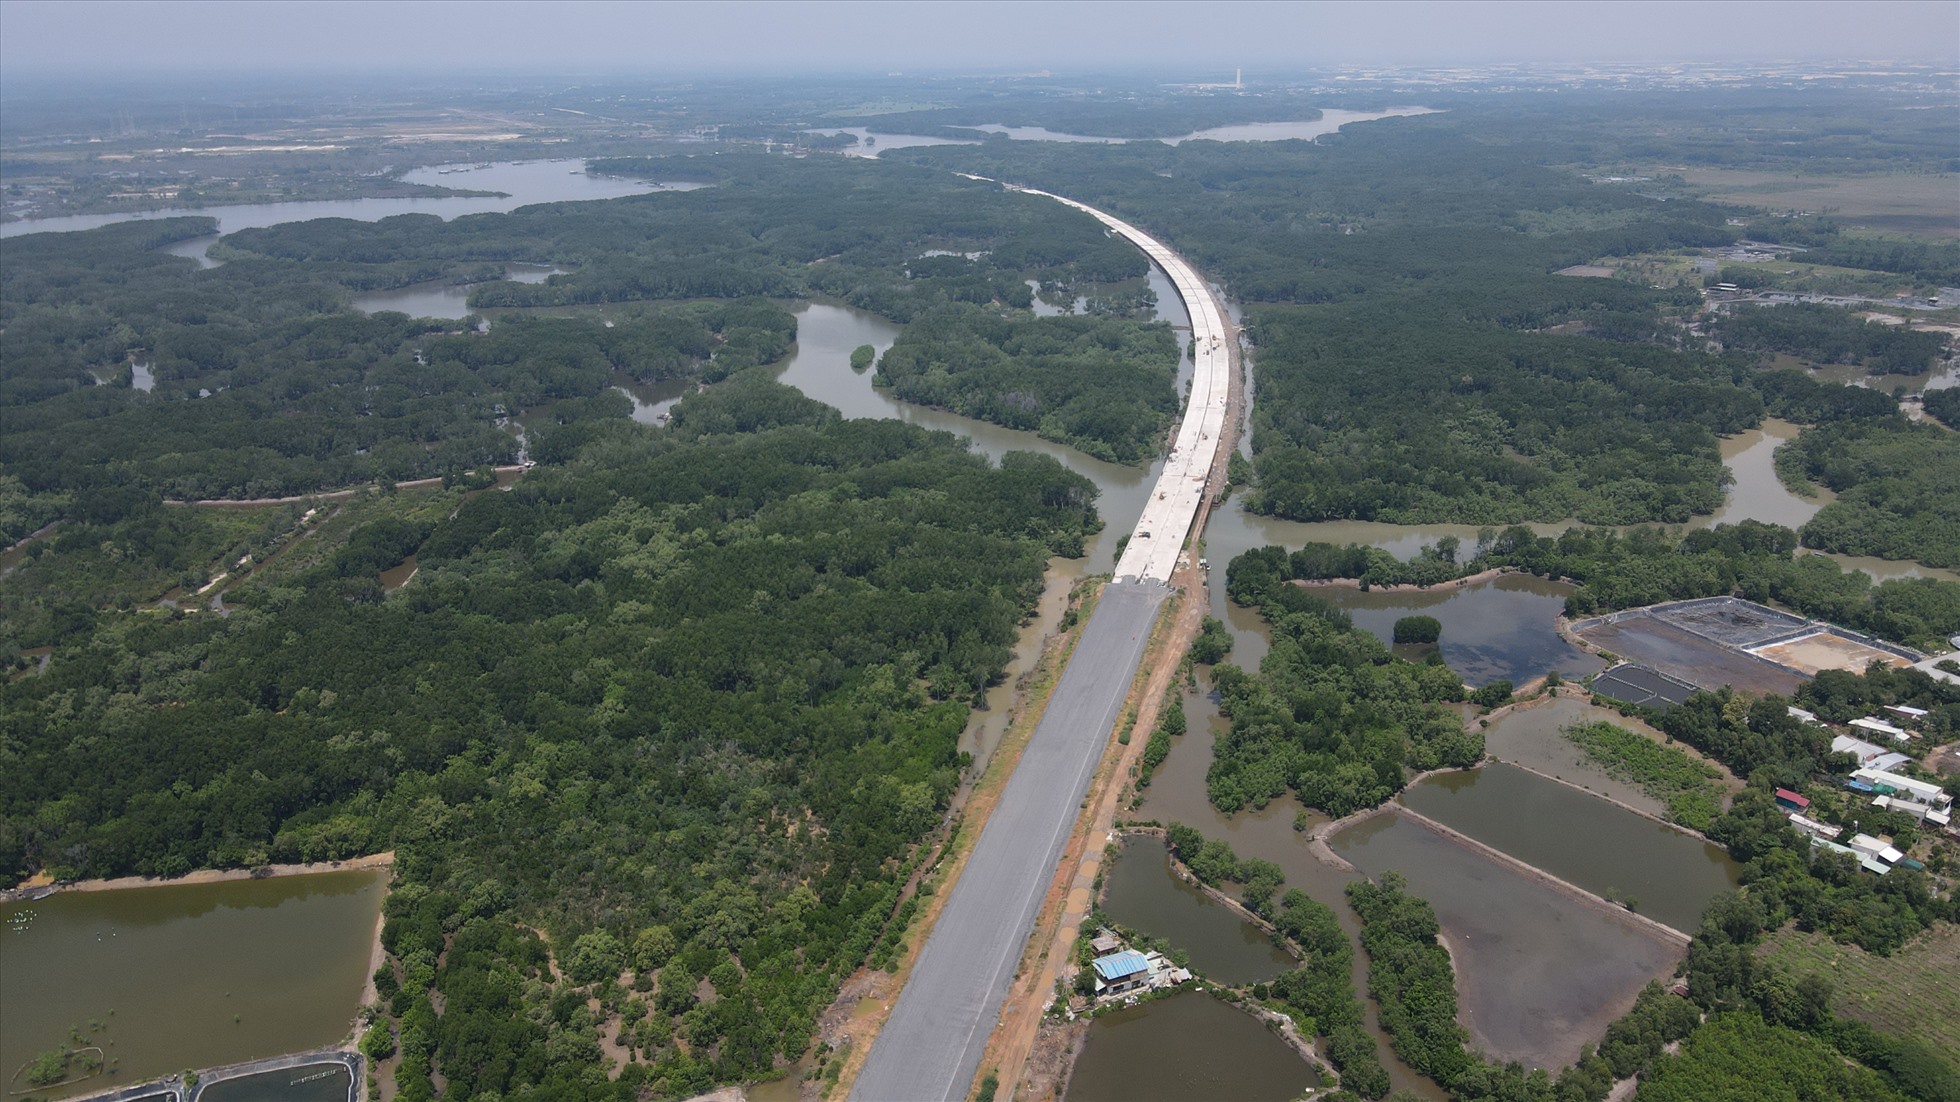 Phần cao tốc qua tỉnh Đồng Nai dài 27 km, một số đoạn chạy qua các vùng địa chất phức tạp, có nhiều sông ngòi, sình lầy. Trong đó, hơn 3 km đi qua khu rừng ngập mặn thuộc huyện Long Thành, Nhơn Trạch.